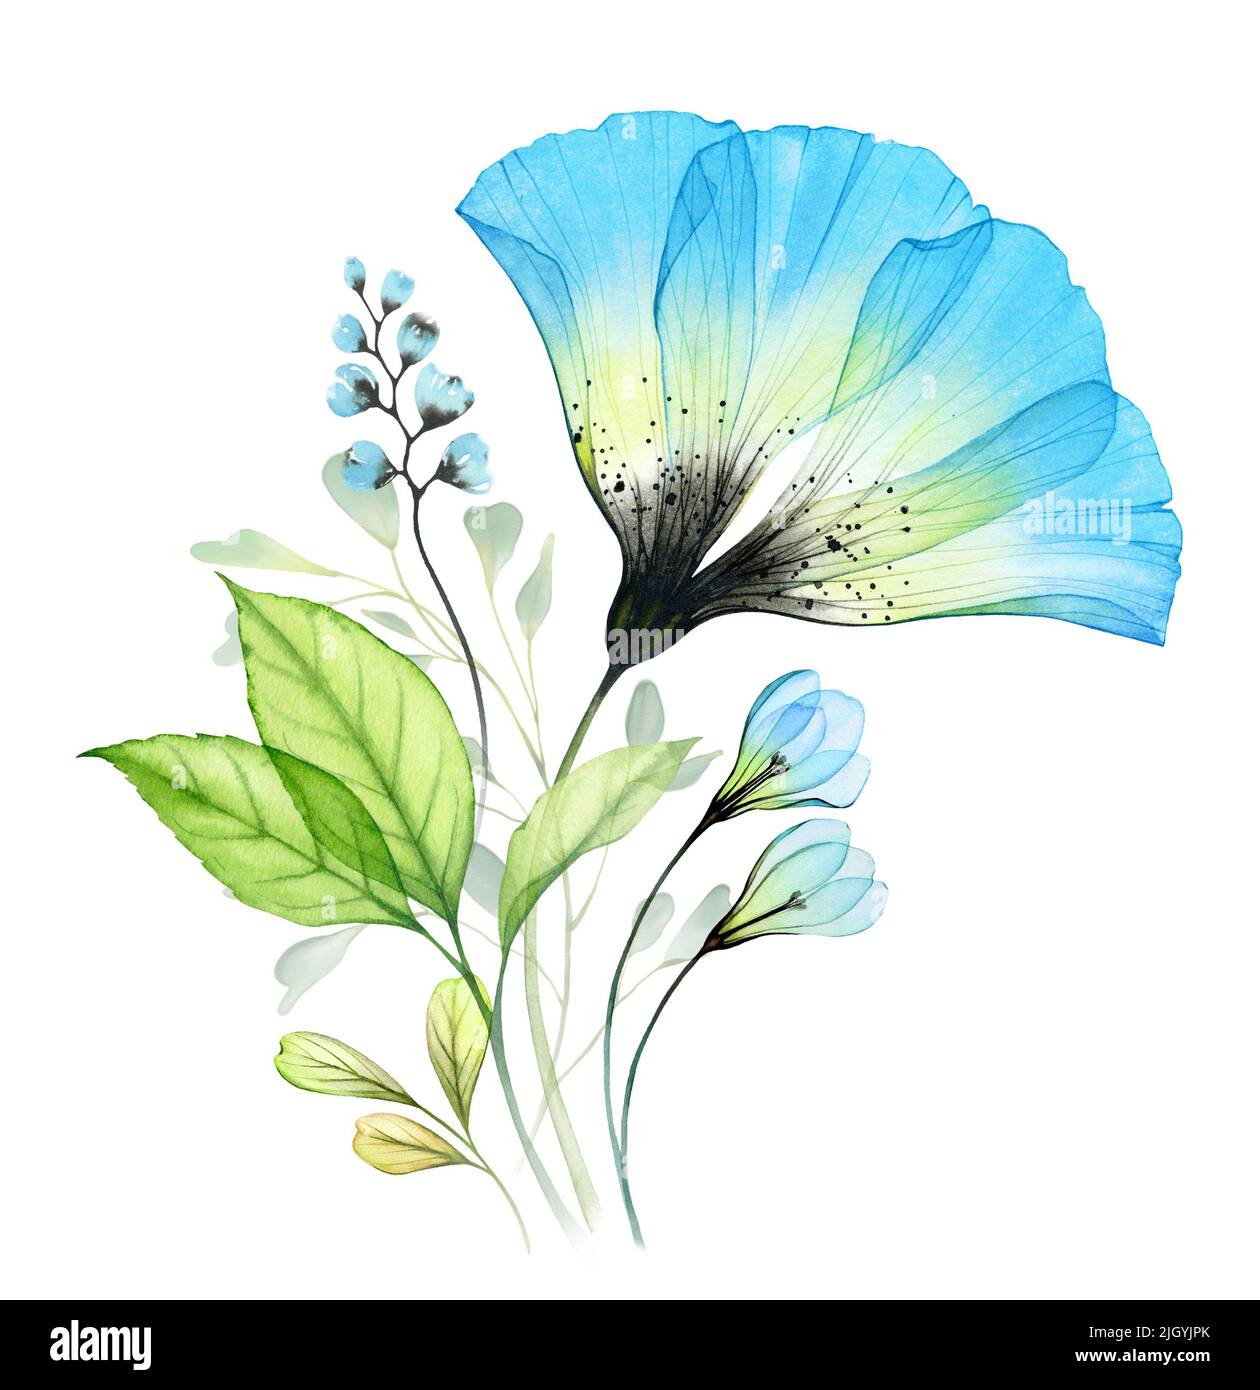 Bouquet d'aquarelle avec grand anémone bleu et gouttes de neige. Composition abstraite avec fleurs turquoise transparentes et feuilles vertes. Peint à la main vibrant Banque D'Images